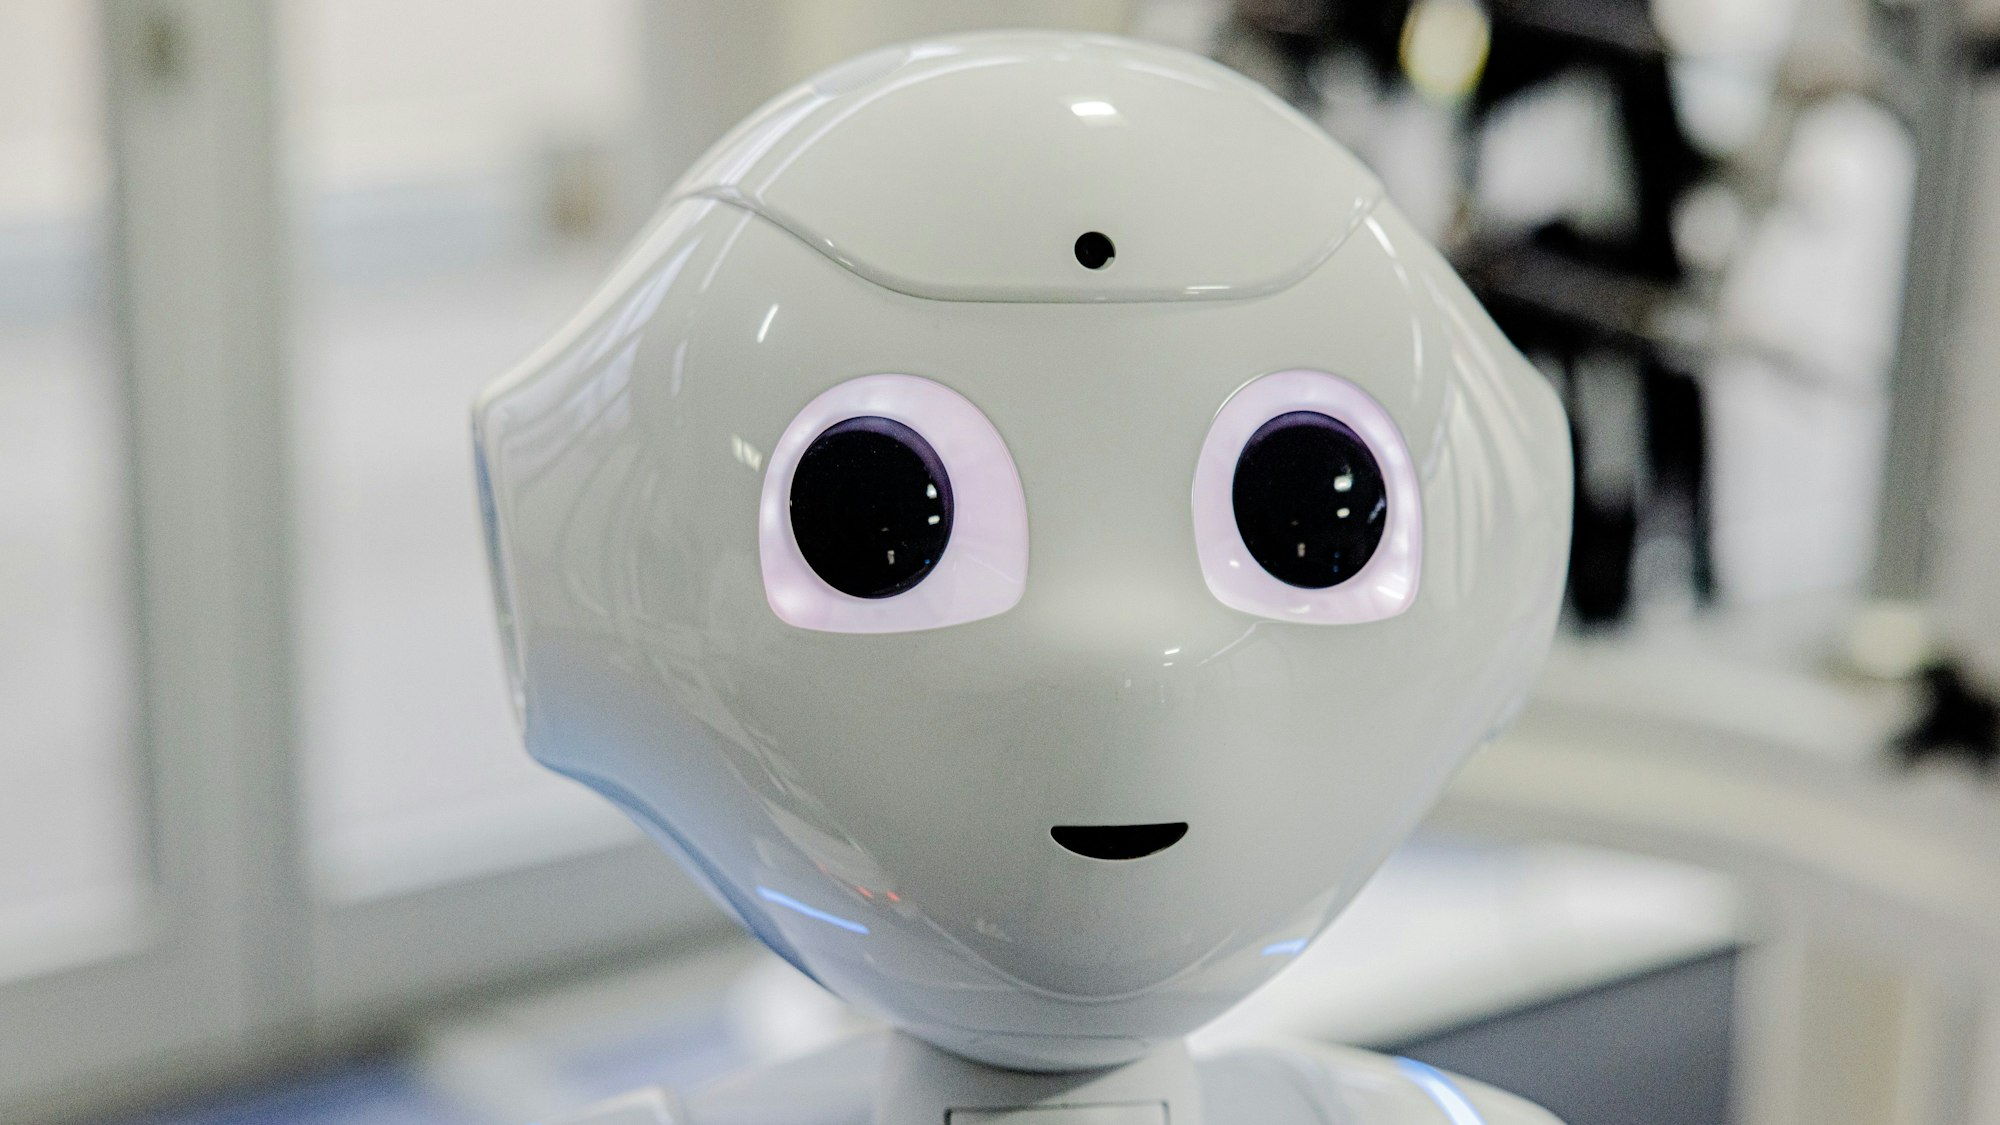 Pepper sorgt als humanoider Roboter im St. Marien-Hospital für Unterhaltung.